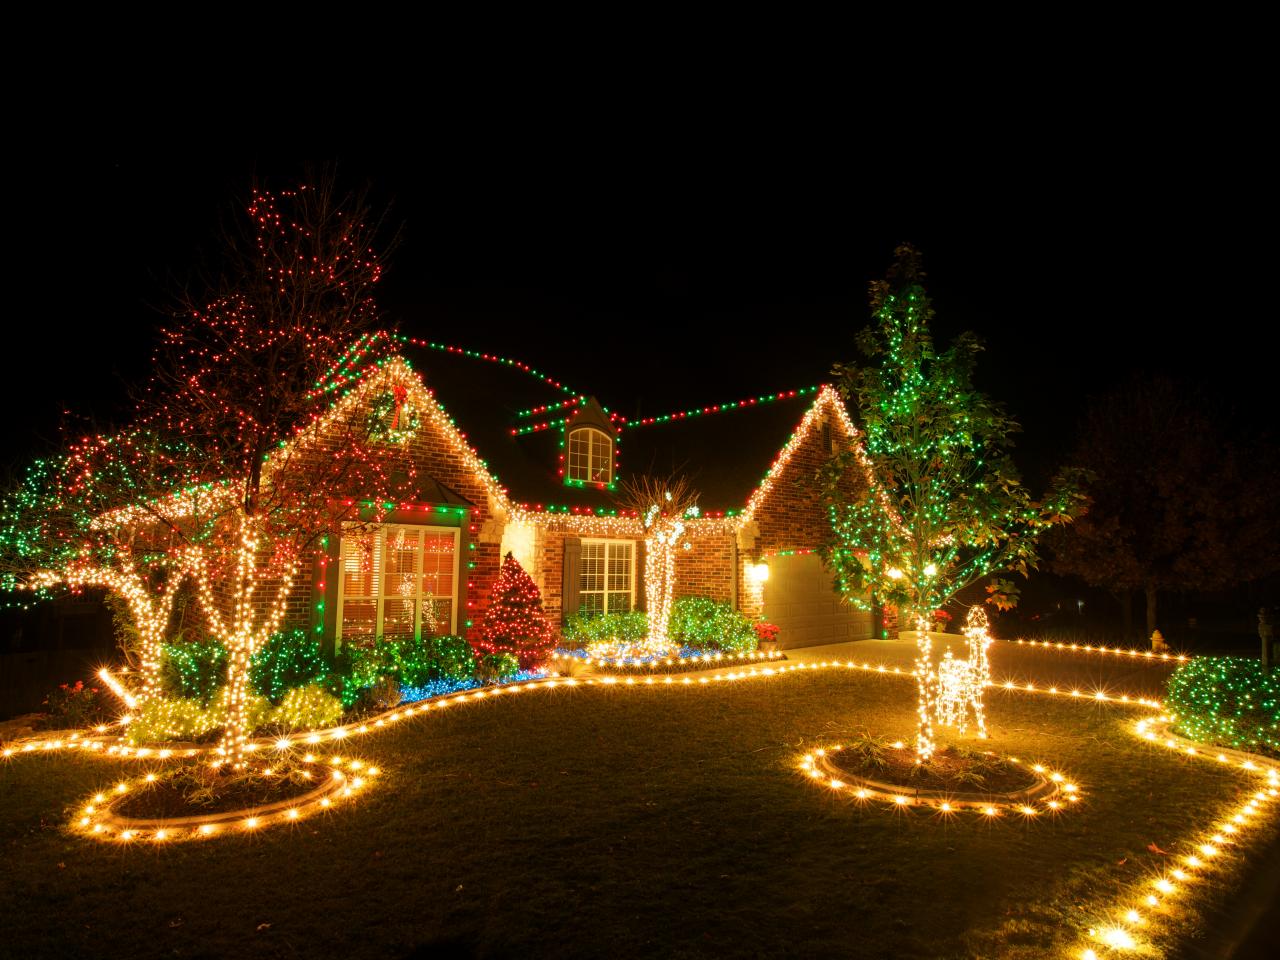 How To Hang Christmas Lights Diy focus for Home Christmas Decorations Lights